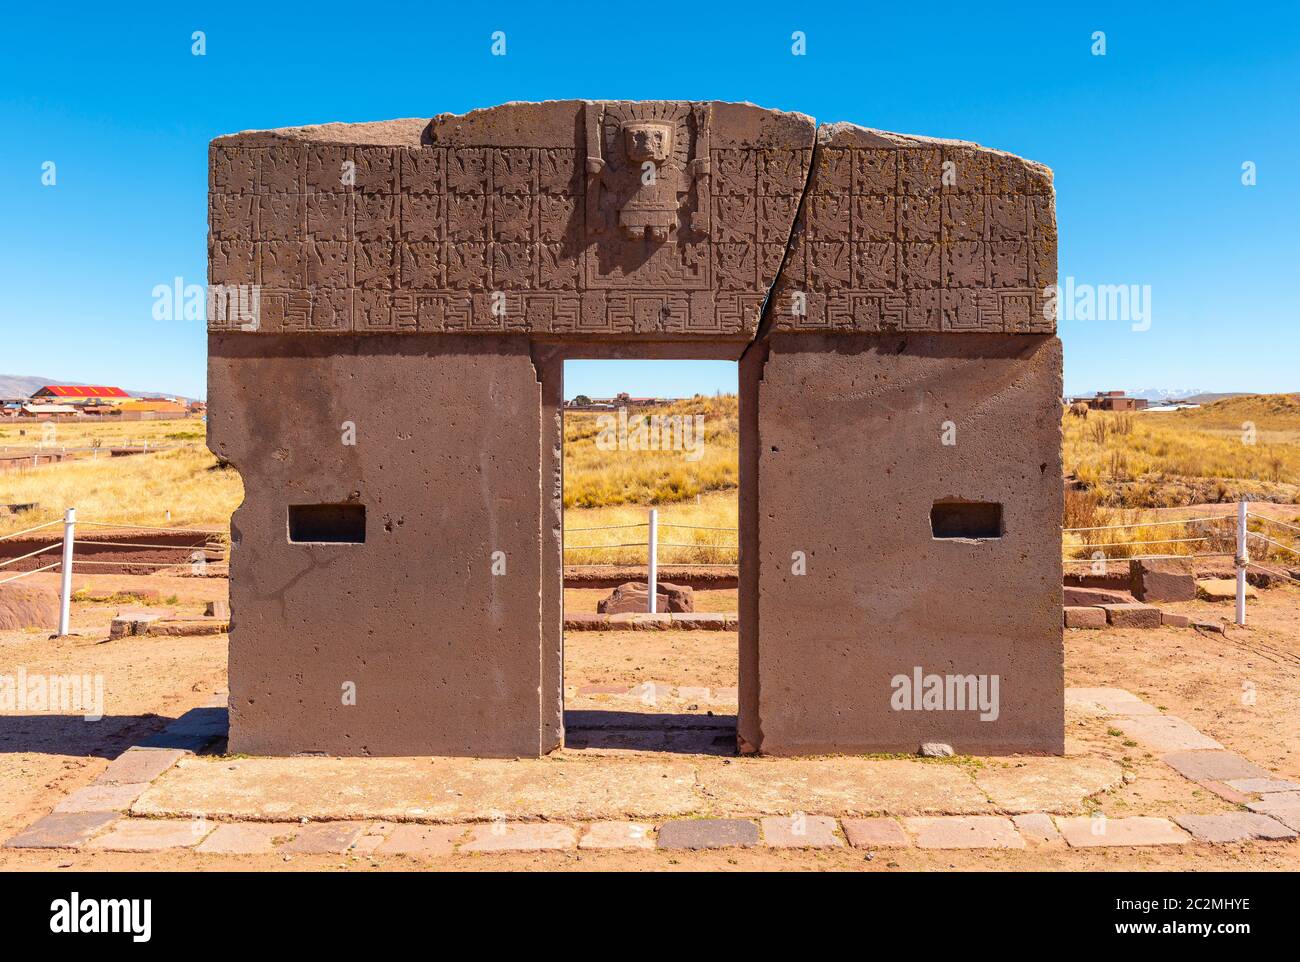 Porte du Soleil monolithe avec bas relief décorations du Dieu créateur Viracocha et un calendrier solaire, Tiwanaku, la Paz, Bolivie. Banque D'Images